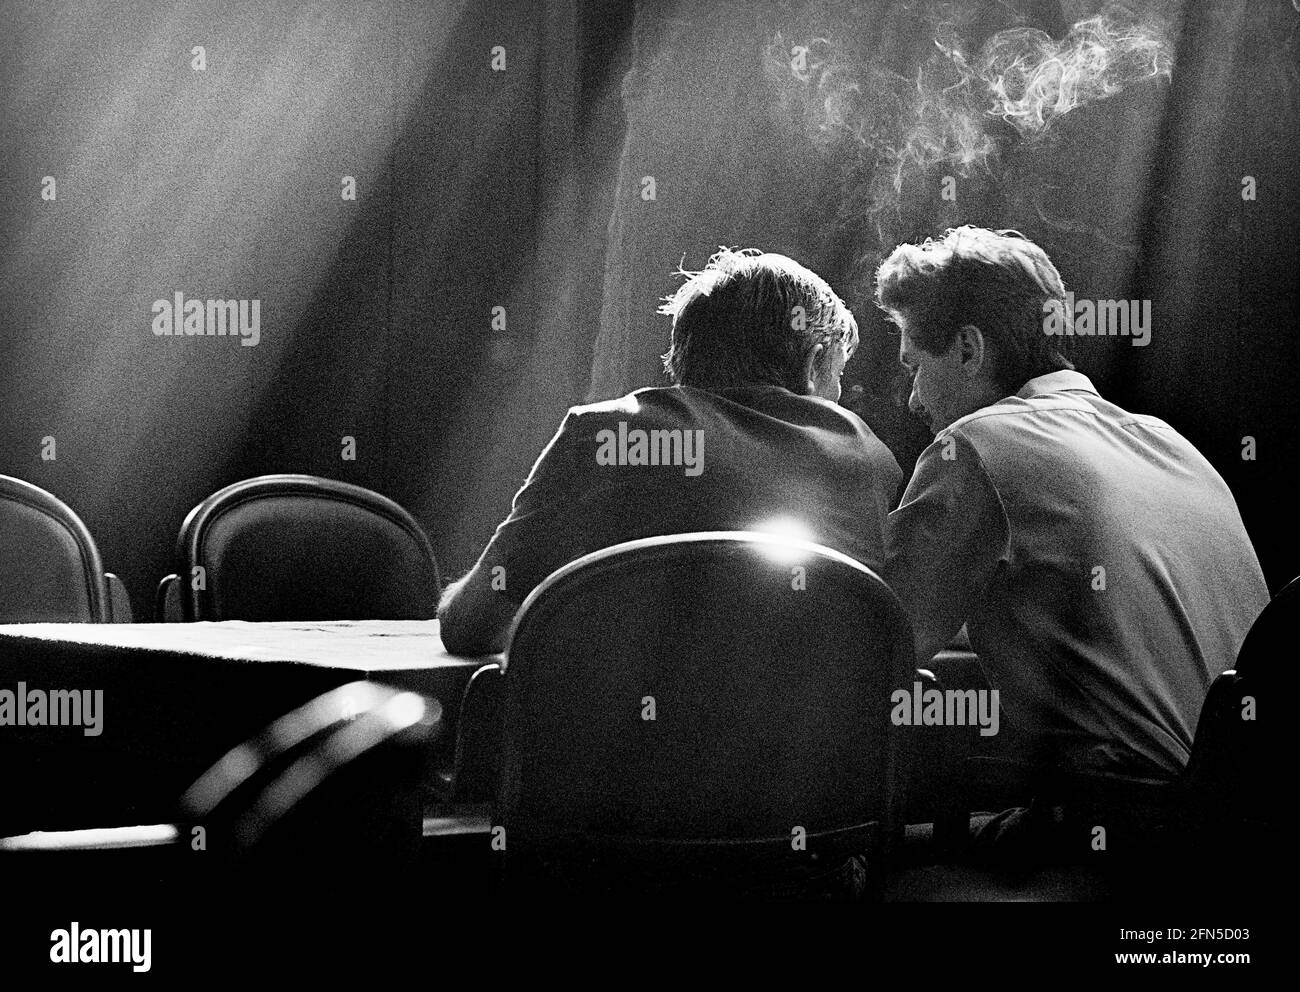 Entouré par la lumière tombant, deux hommes s'assoient dans un pub sombre de Kiev. Ils parlent, fument et ont des boissons. 02.09.1991 - Christoph Keller Banque D'Images